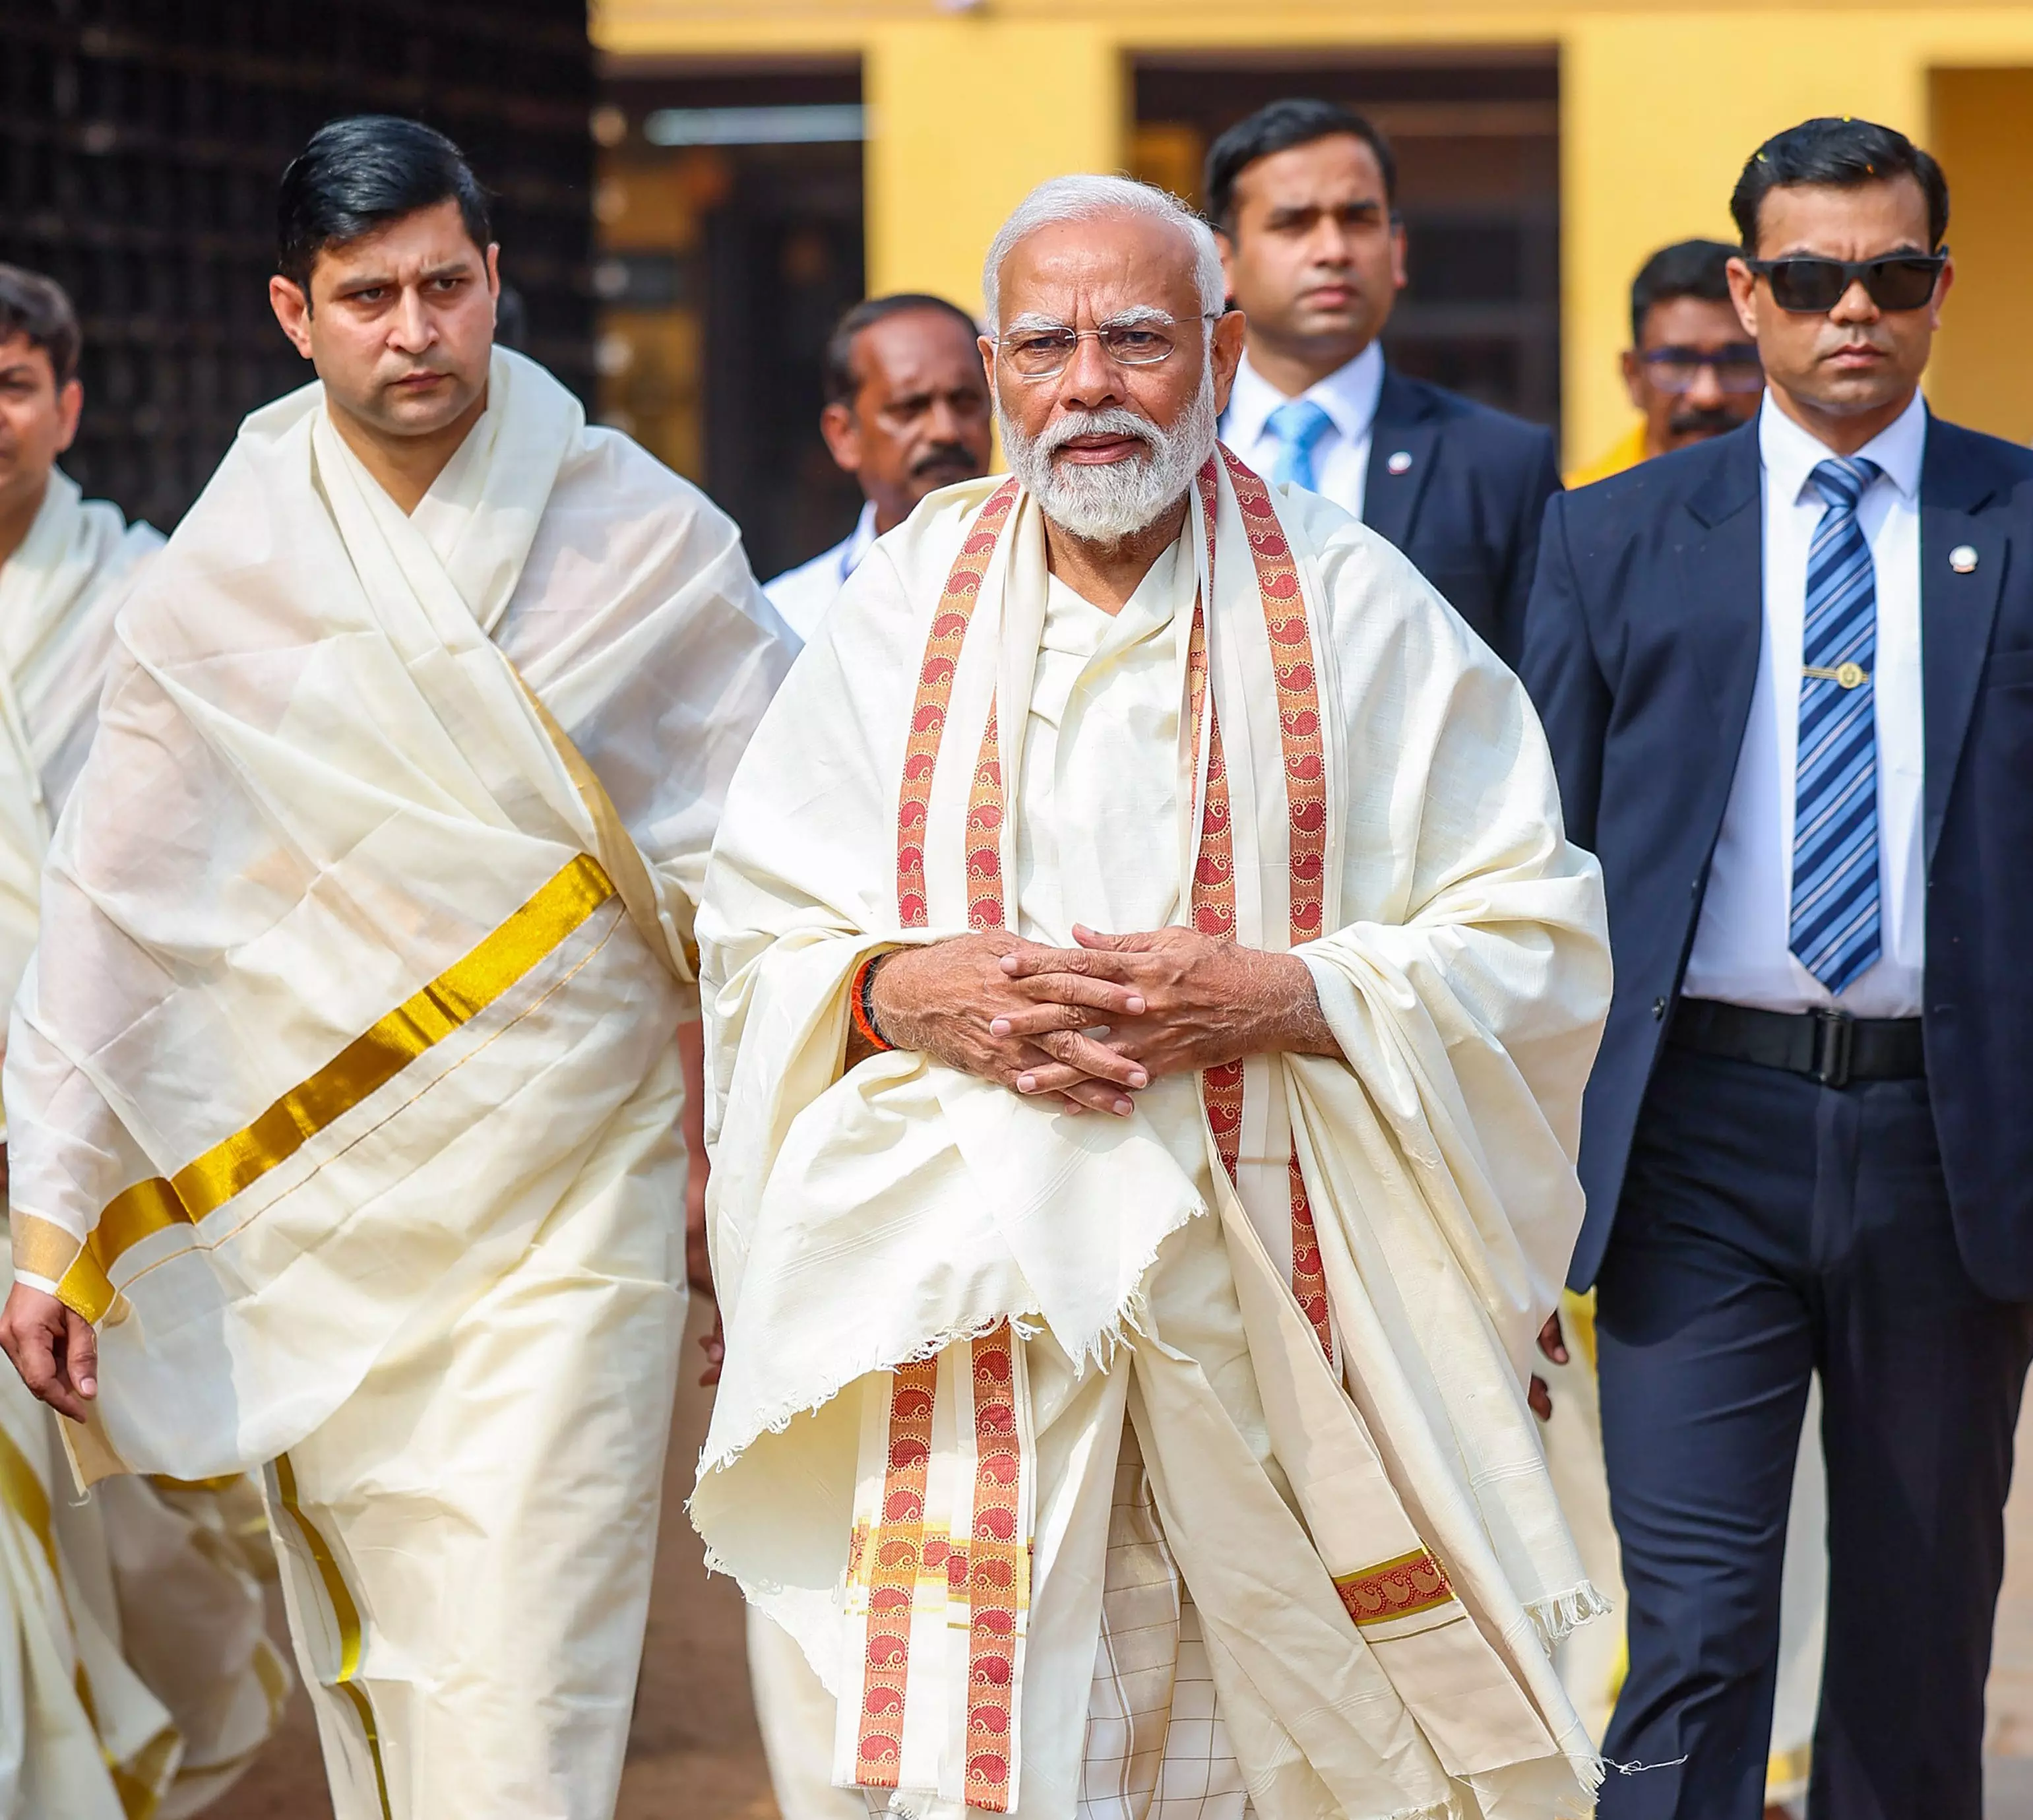 Kerala: PM Modi performs puja, darshan at Guruvayur Temple